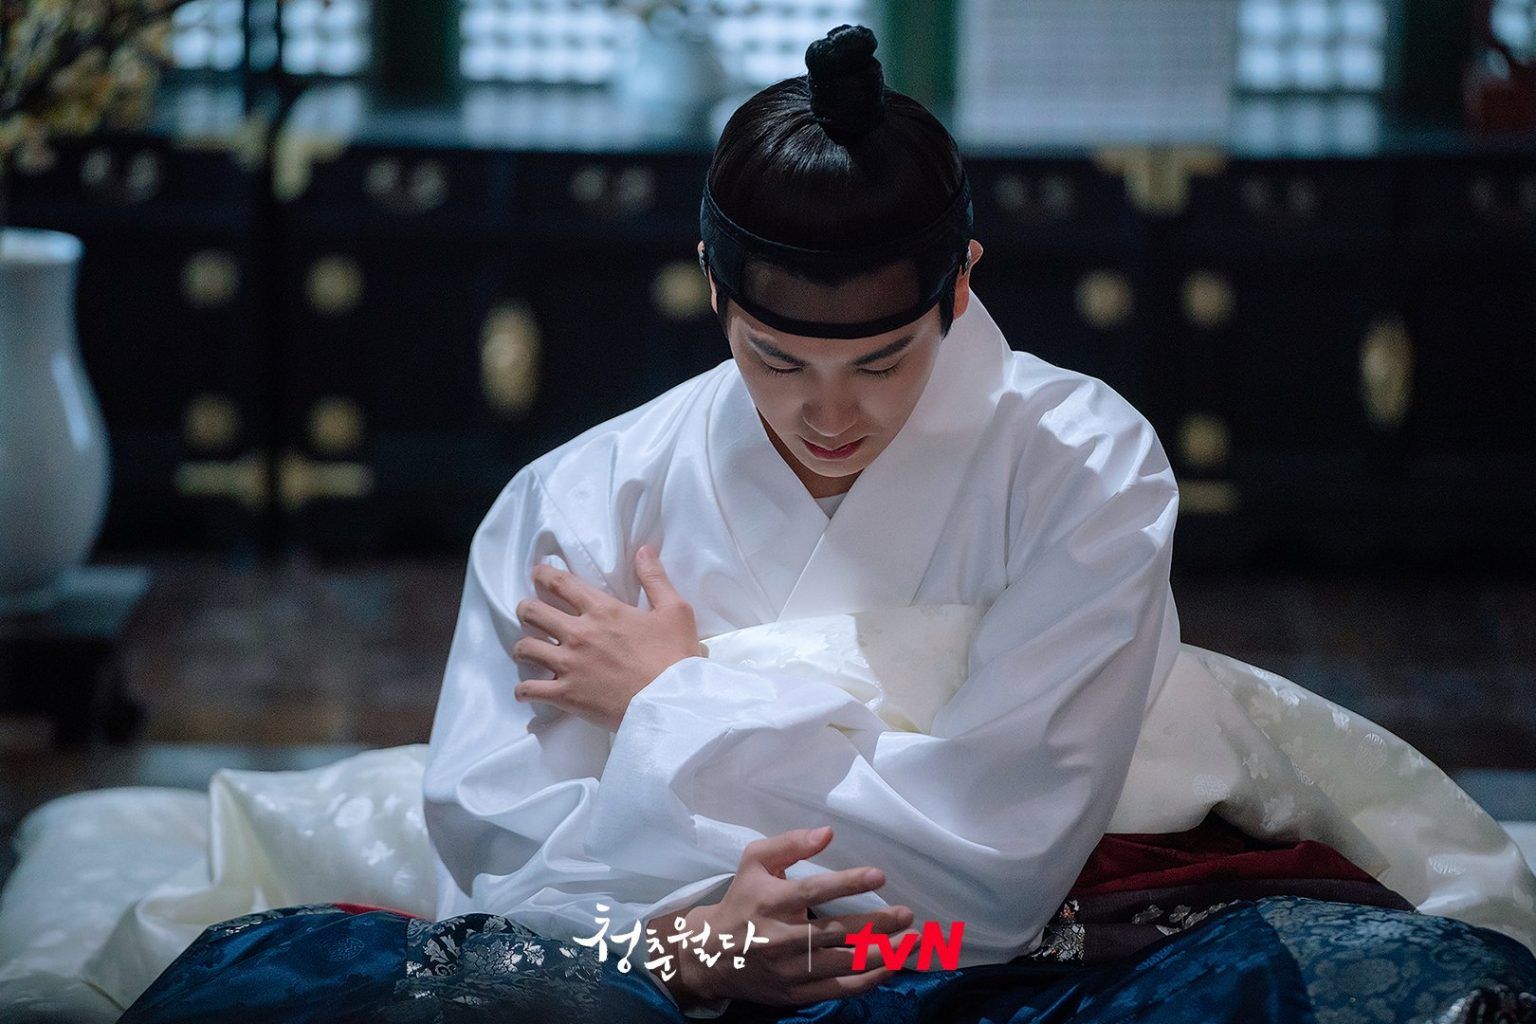 KDrama terbaru Our Blooming Youth menampilkan aktor Park Hyung Sik  yang berperan sebagai pangeran berhati dingin yang menyimpan rasa sakit karena berada di lingkaran kutukan, Berikut Link Nontonya